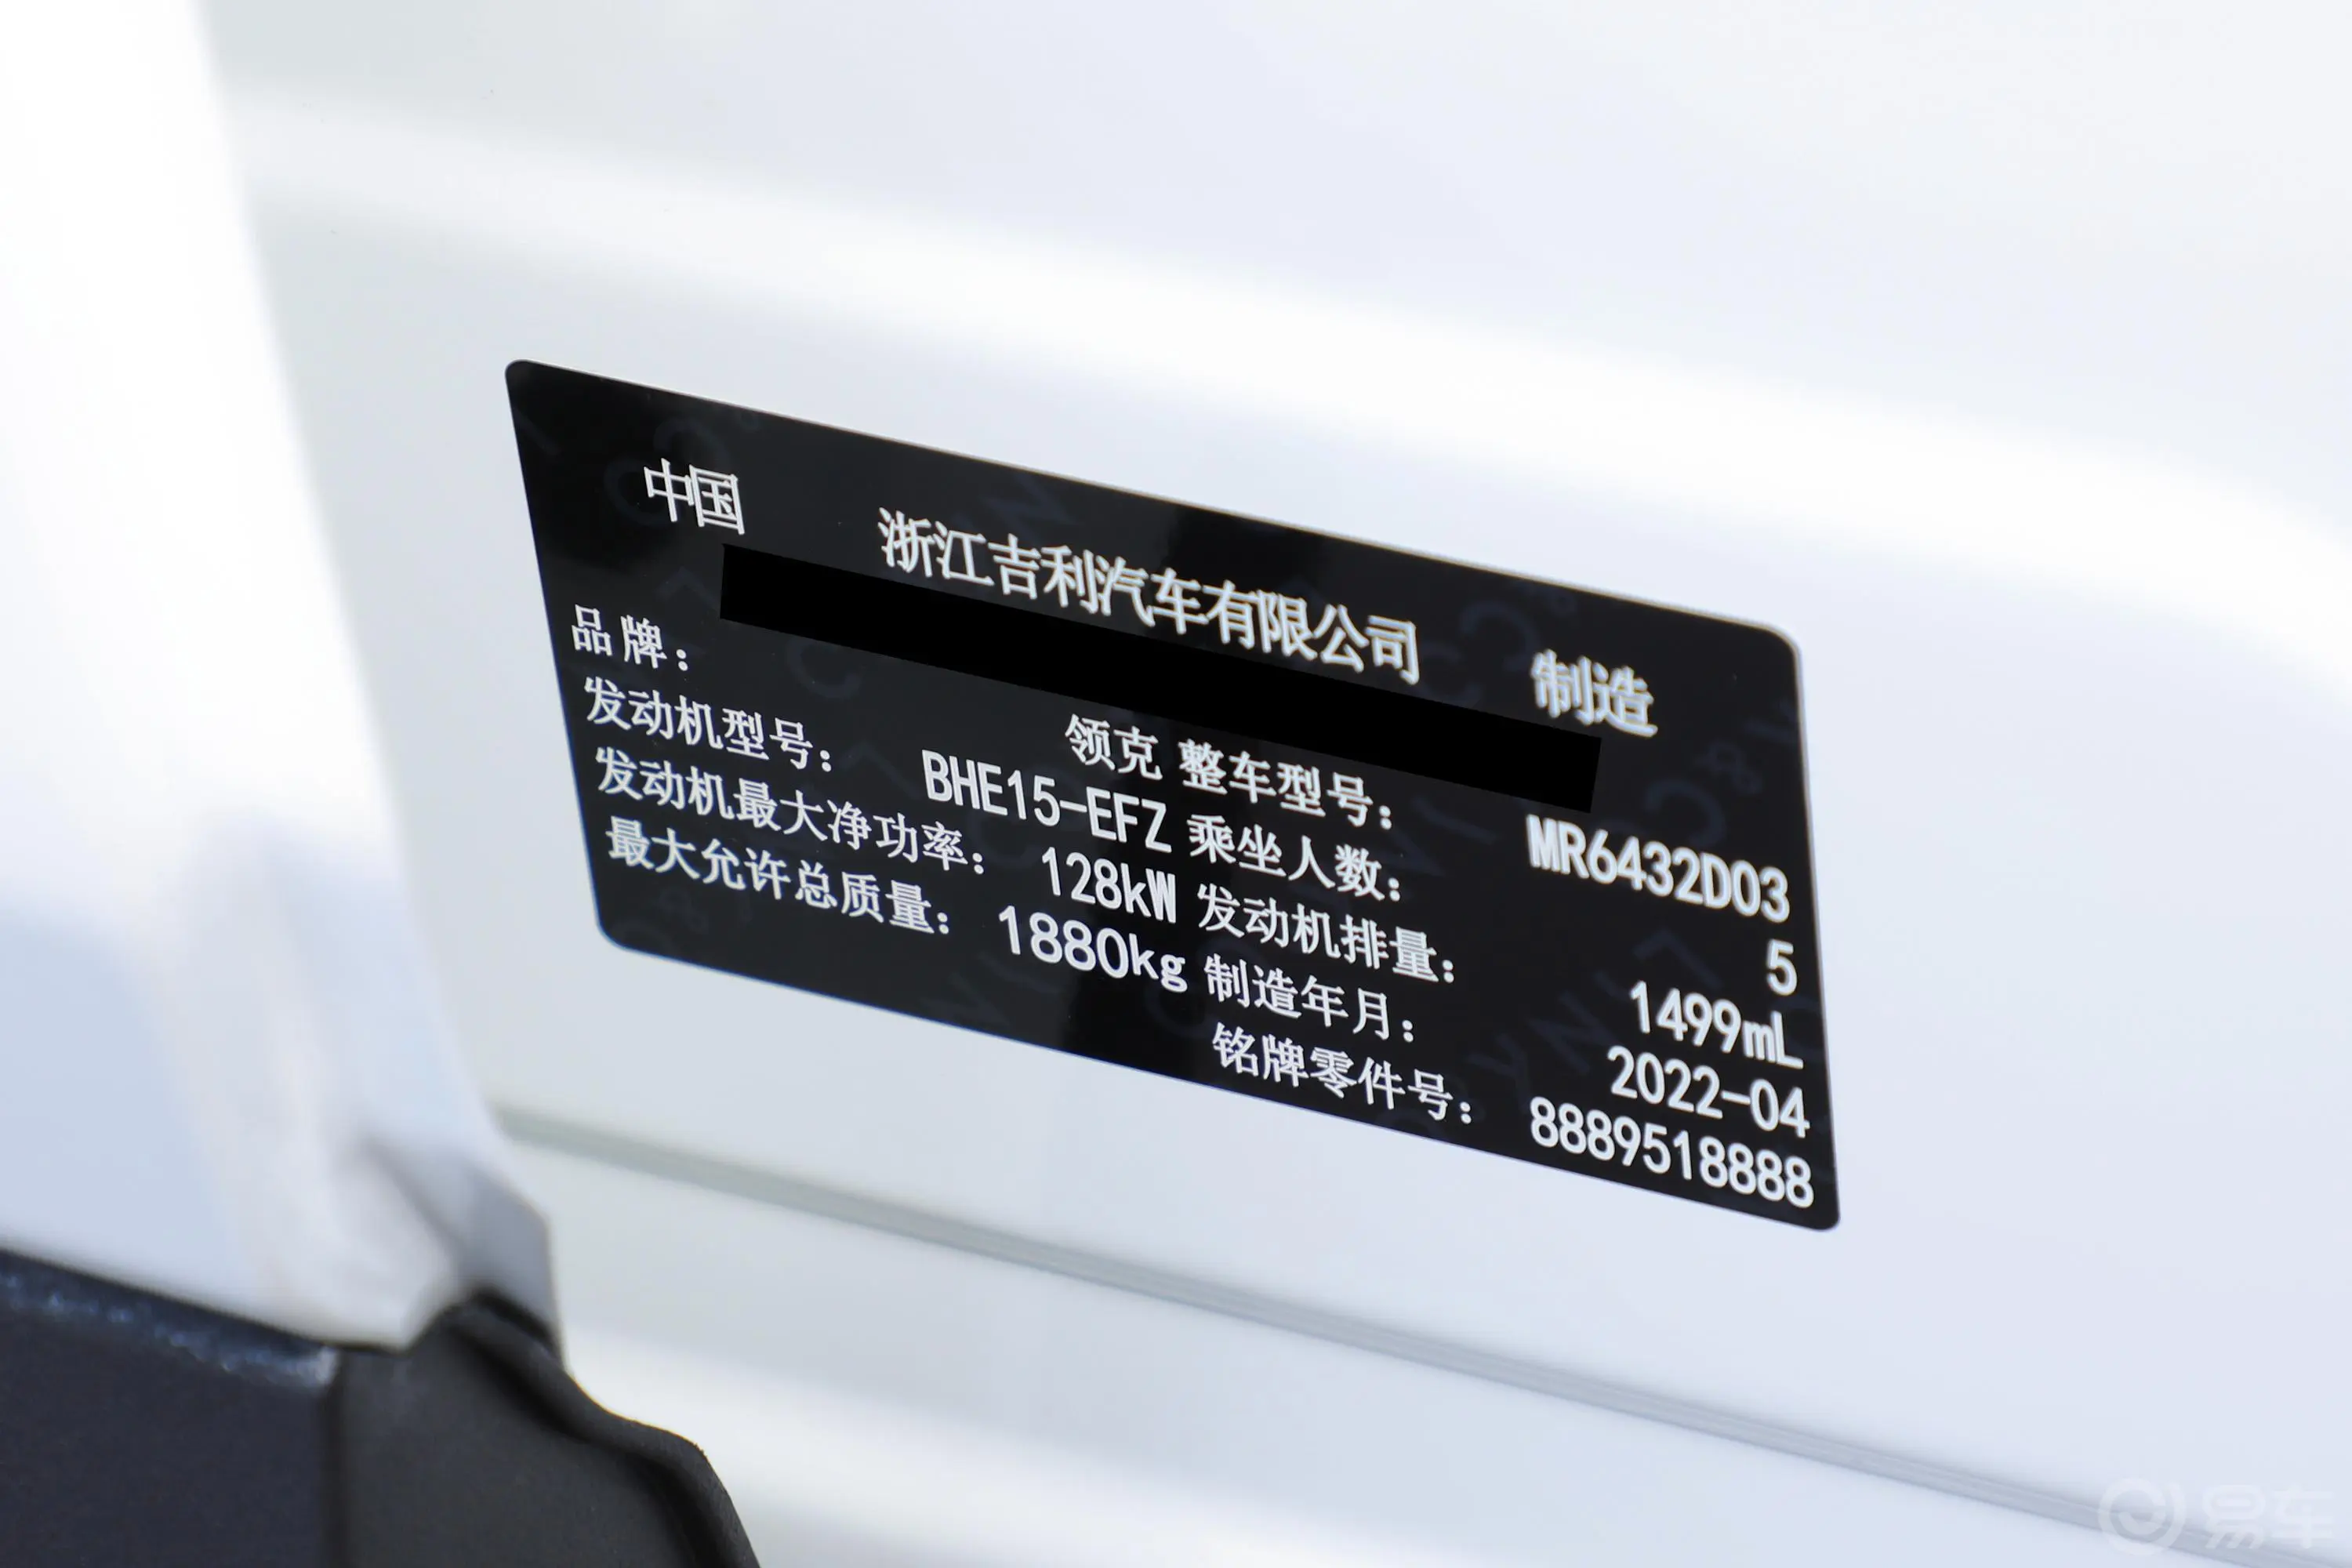 领克06Remix 1.5T 型Plus车辆信息铭牌